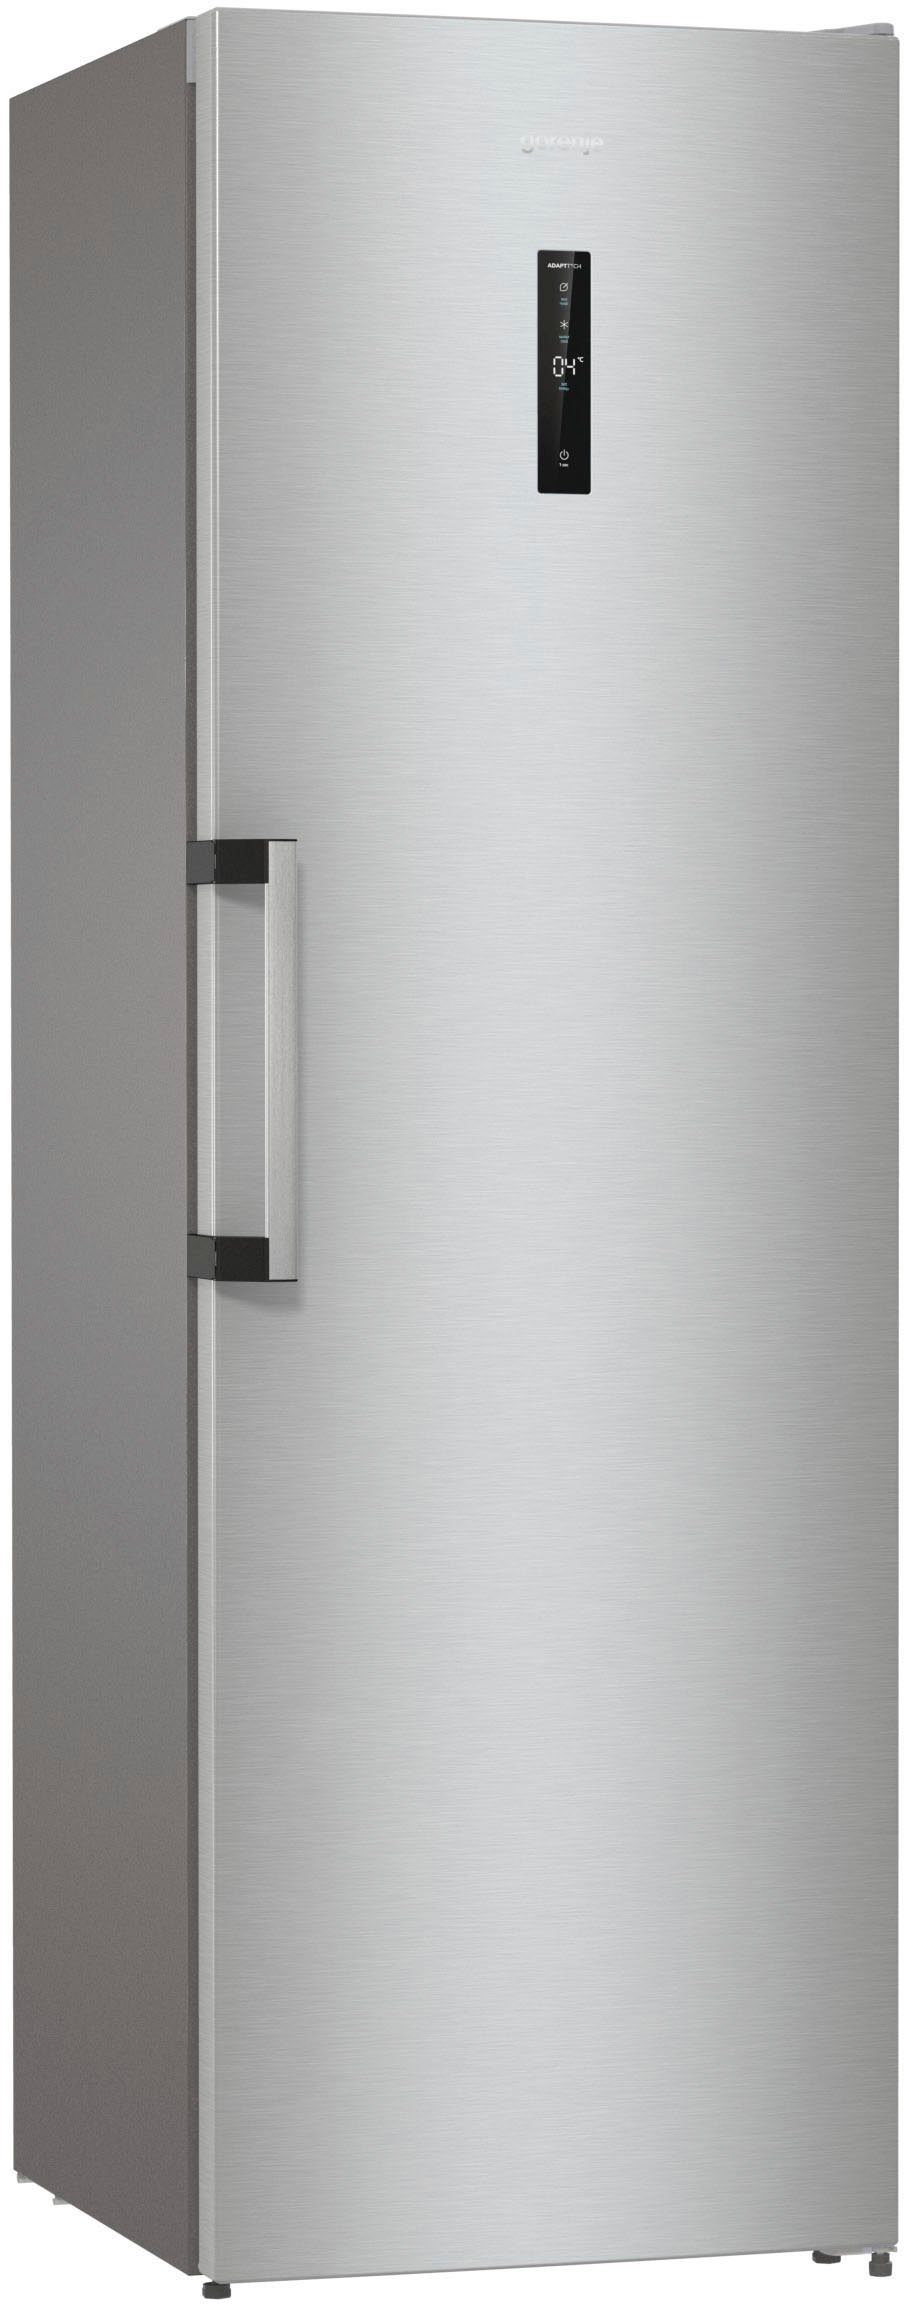 cm GORENJE cm 59,5 Umluft-Kühlung QuickCooling-Funktion Kühlschrank mit breit, 185 hoch, R619DAXL6,